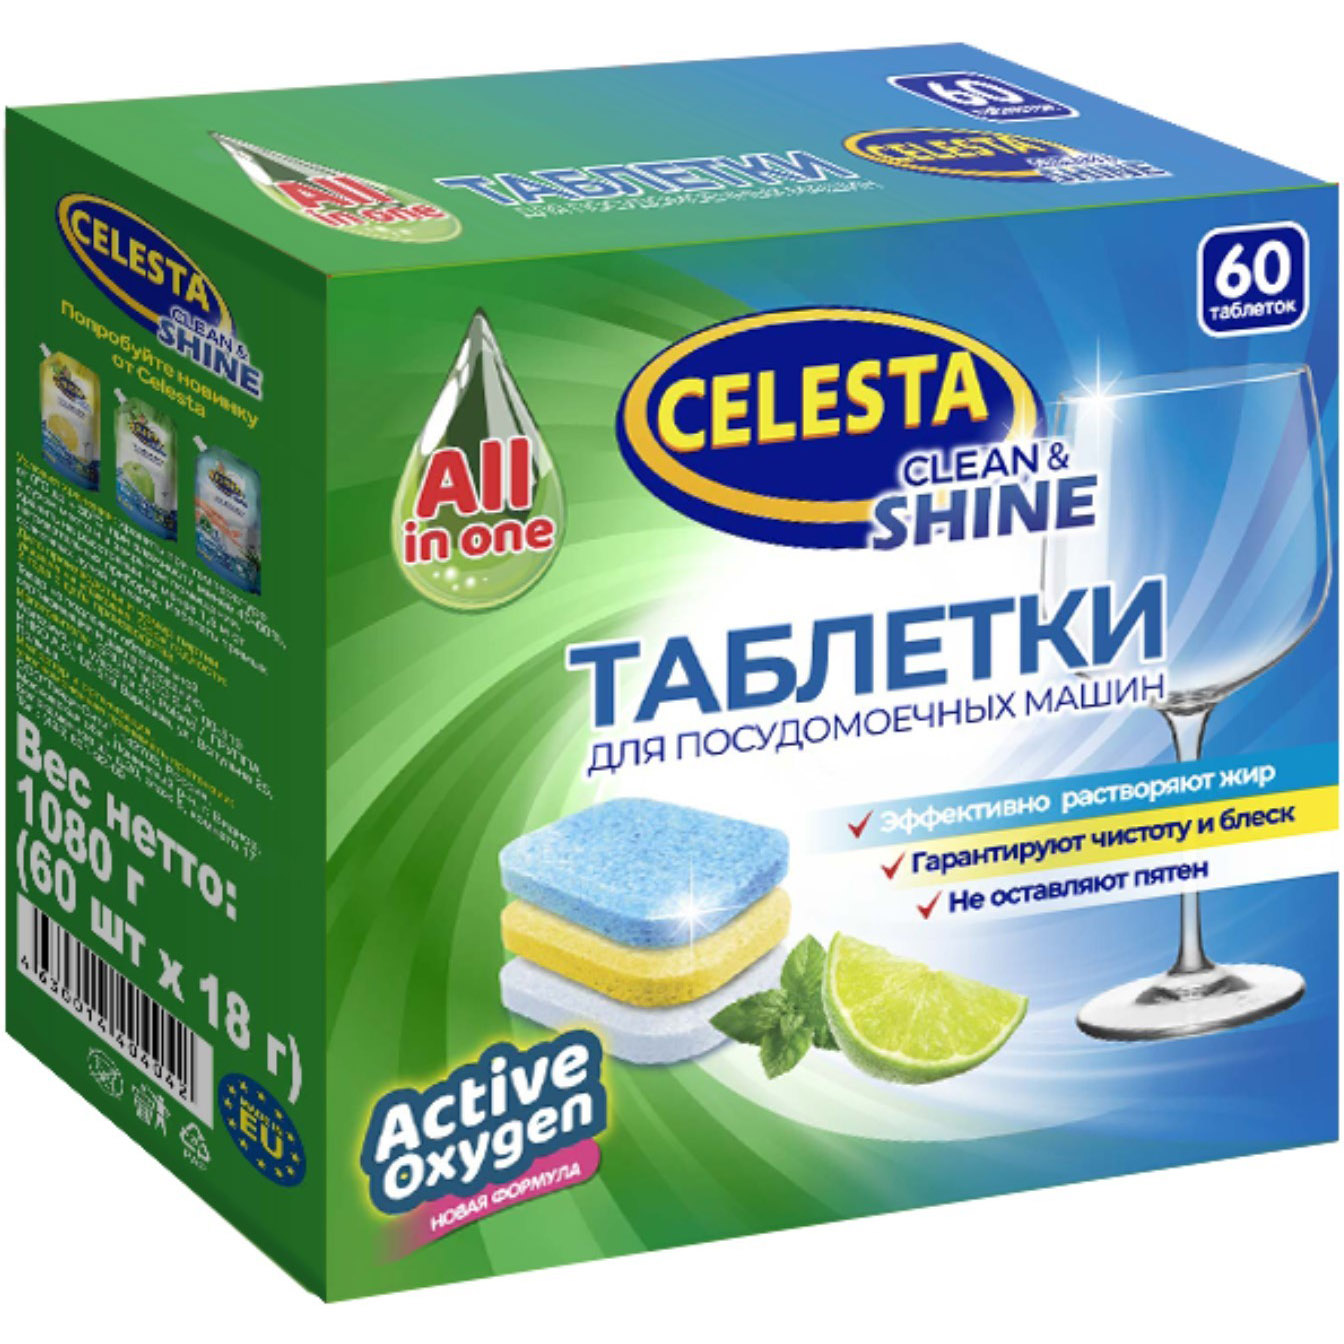 Таблетки для посудомоечных машин Celesta Clean & shine Трехслойные 60 шт